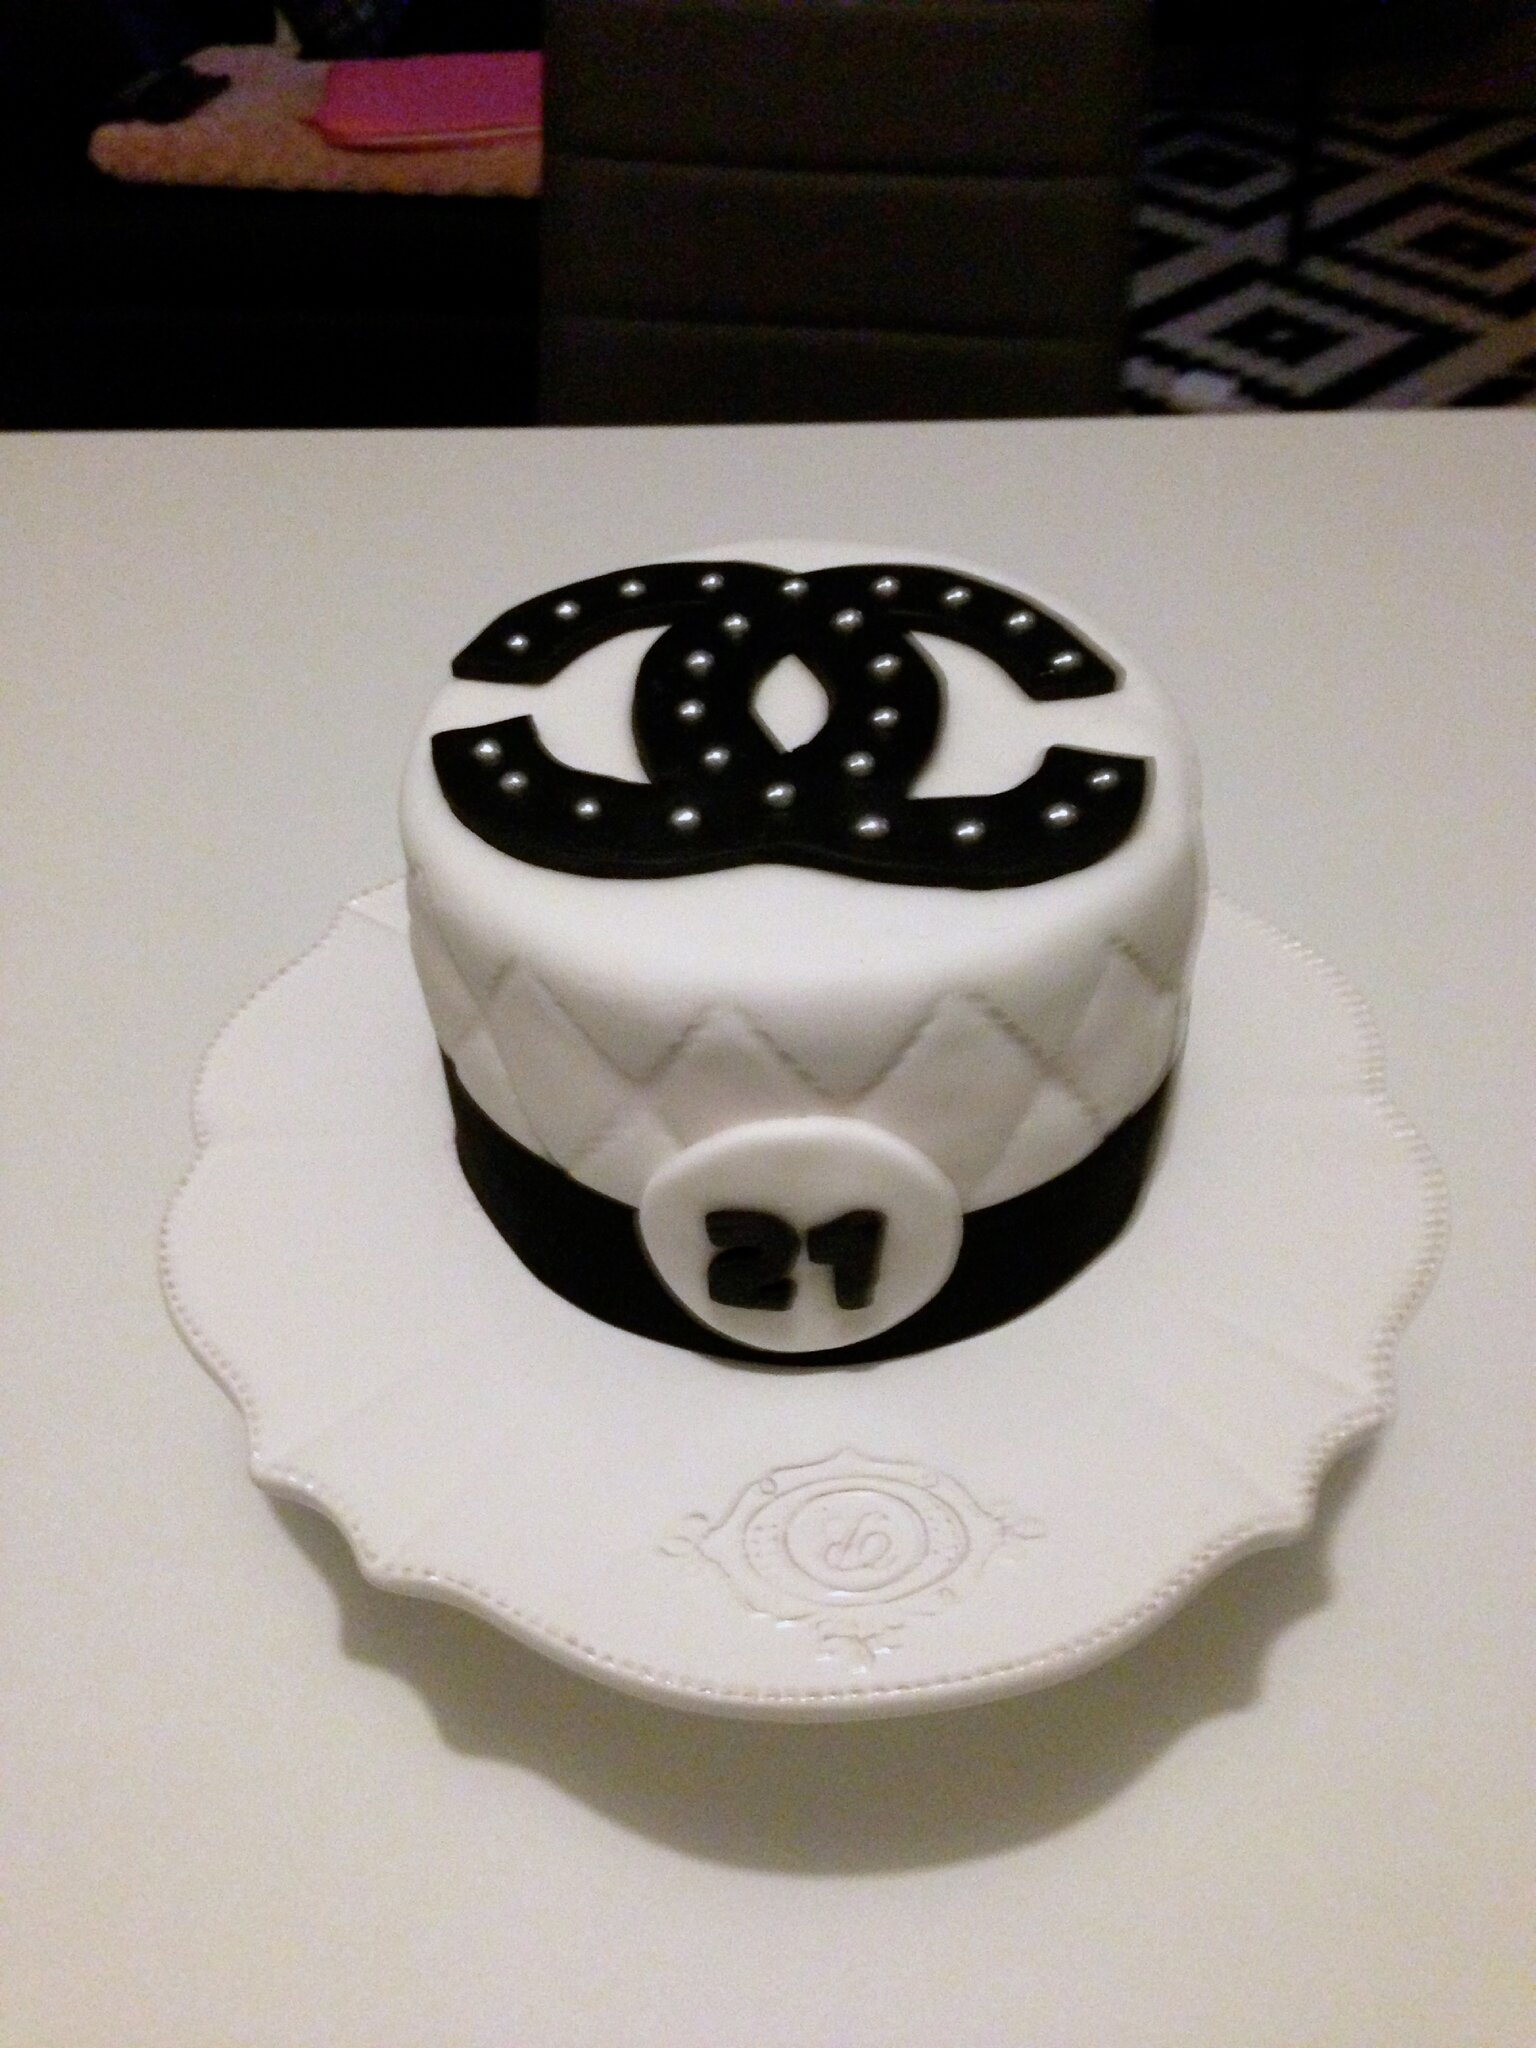 Cake Art Chanel Sur Commande Cake Concept Salon De The Bagels